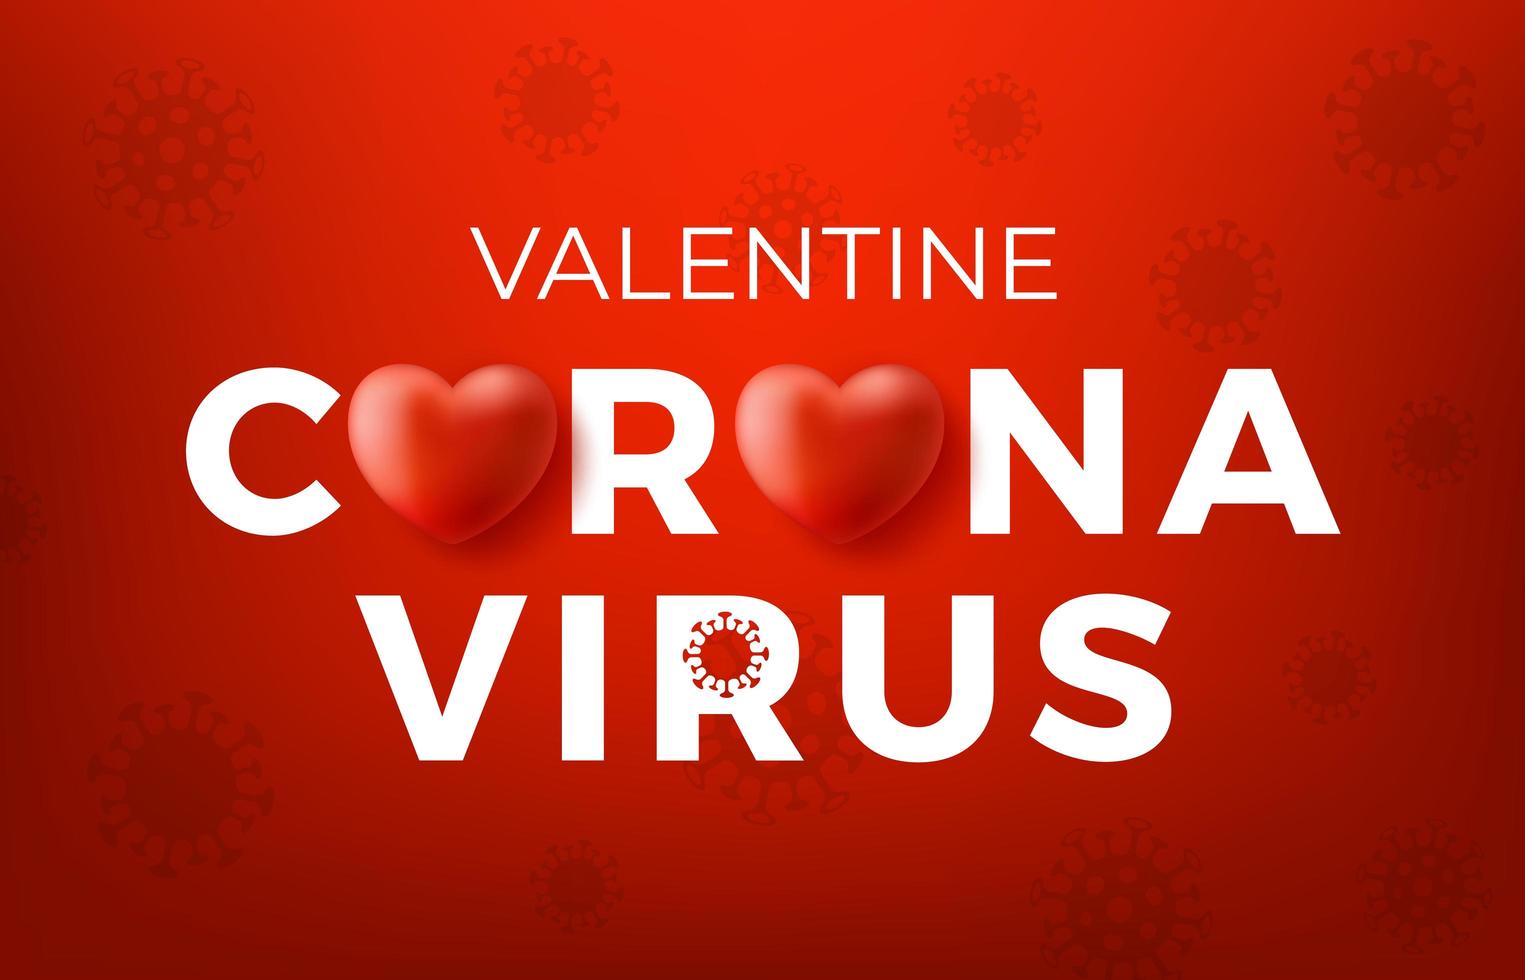 Coronavirus Valentinstag Konzept. Covid Coronavirus Konzept Inschrift Typografie Design Logo, ansteckende Krankheiten der Zeichen, wenn sie einem Virus ausgesetzt sind, gefährliche Virus Vektor-Illustration vektor